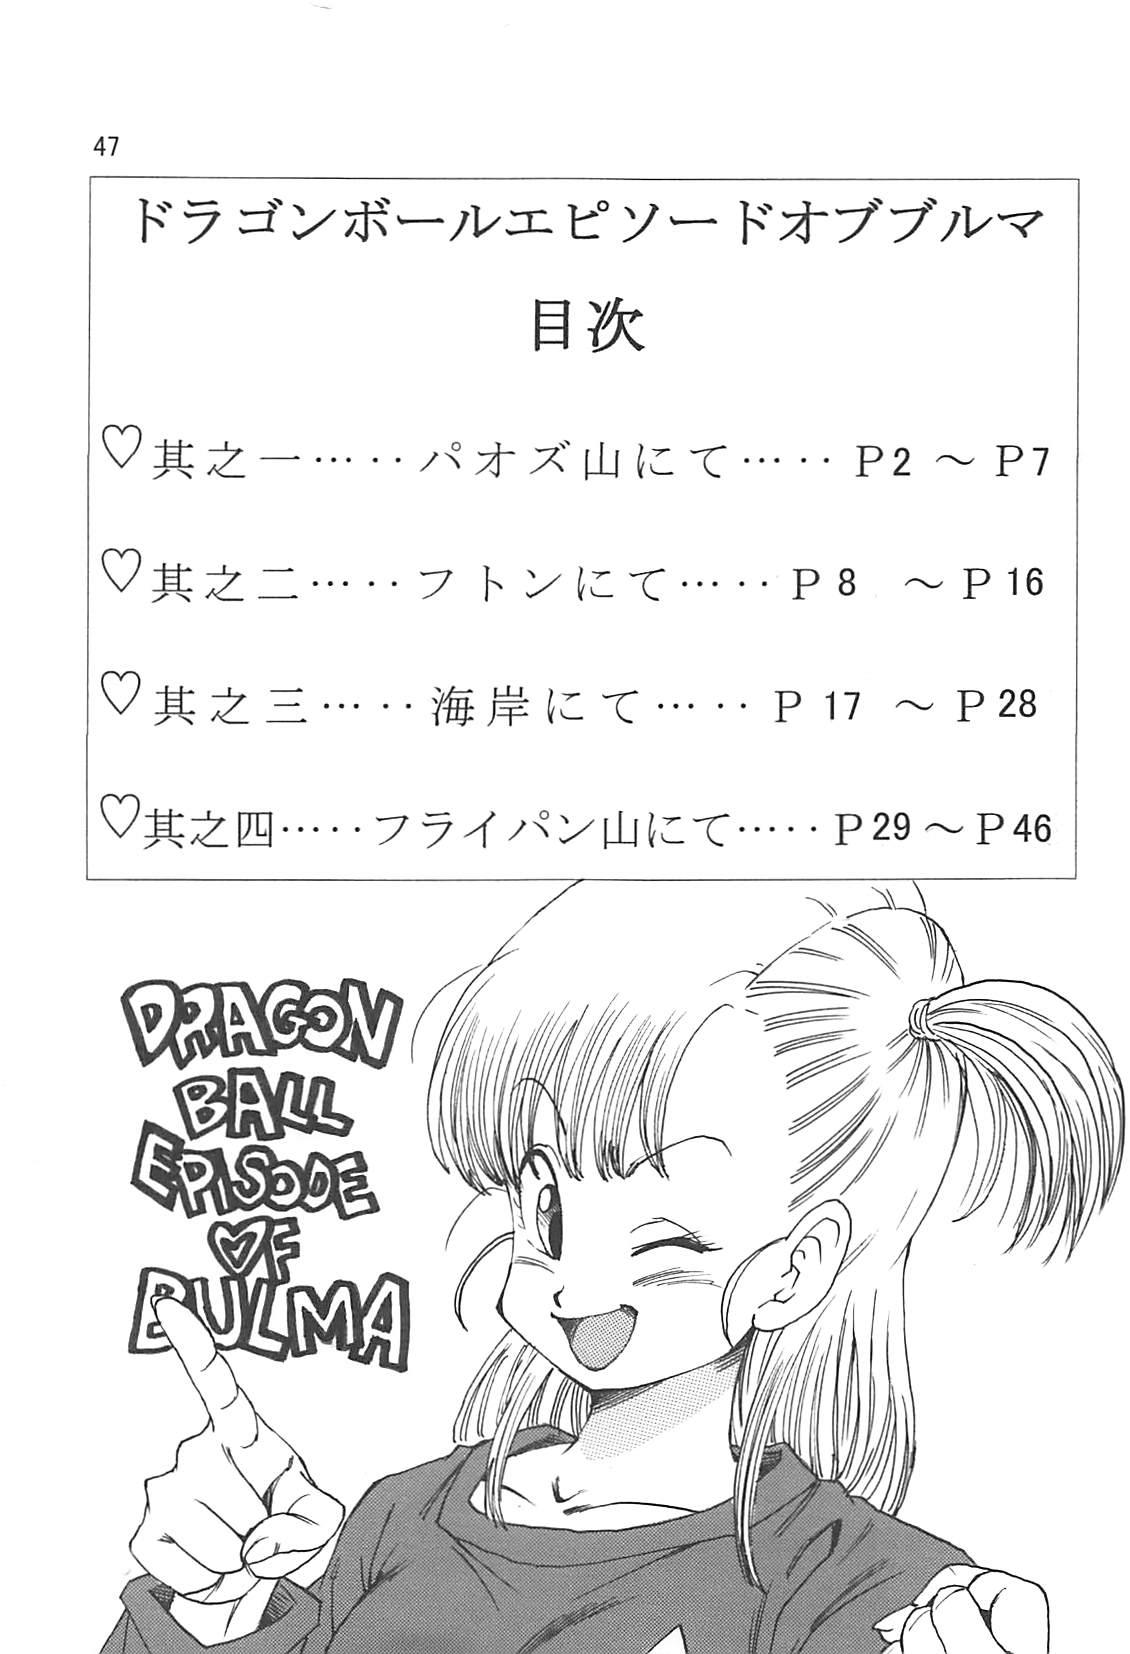 Dragon Ball Episode of Bulma 1 Fukkokuban 47